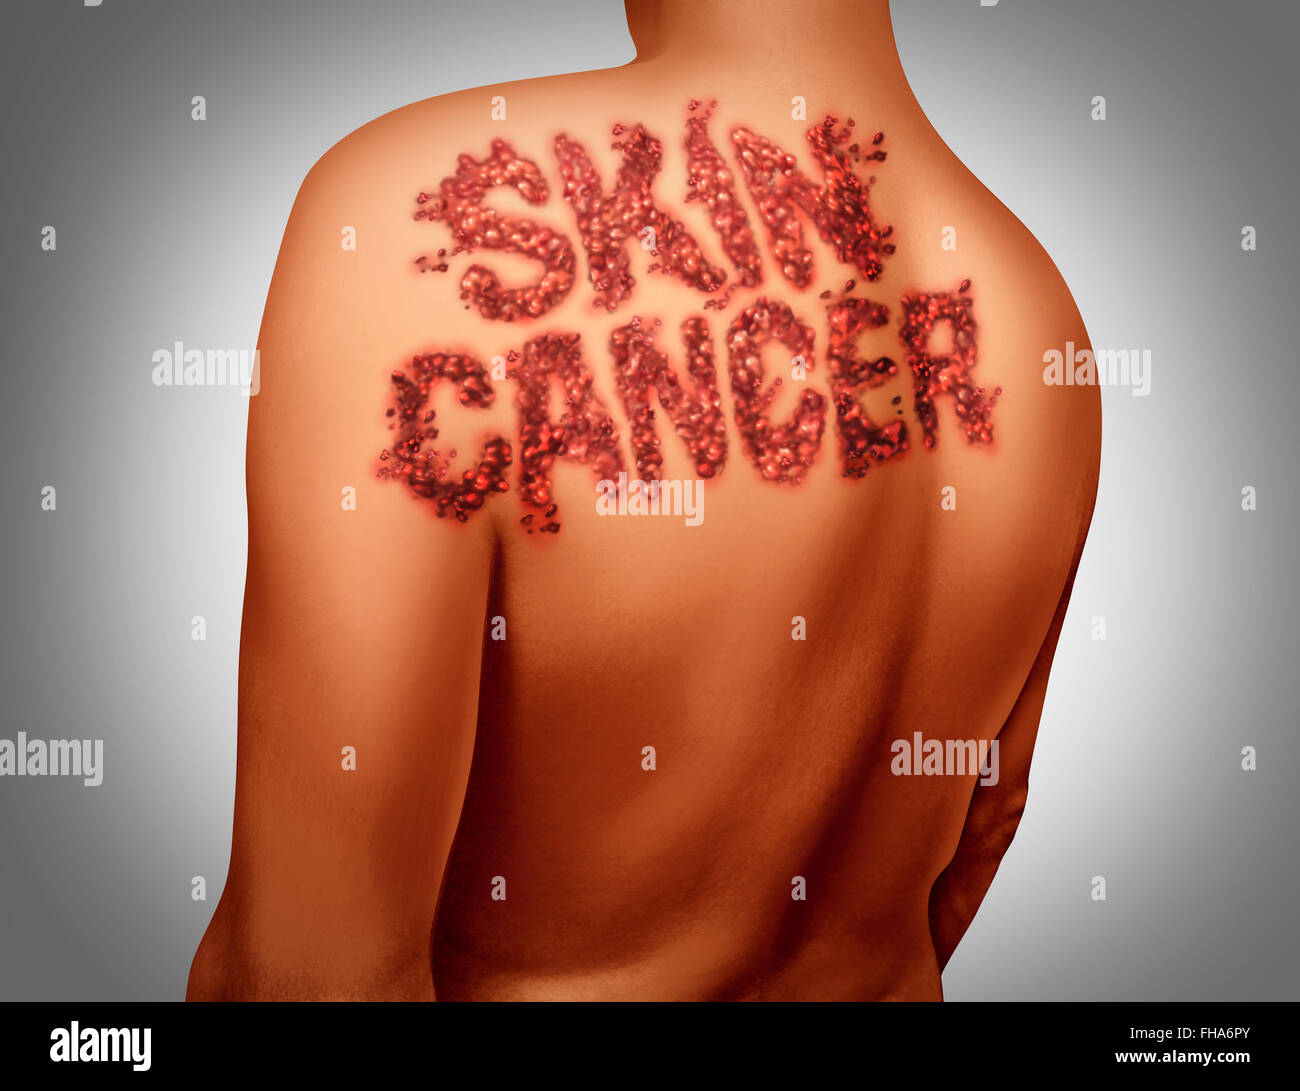 Il cancro della pelle melanoma concetto di malattia come un simbolo di medici dell'epidermide umana anatomia essendo attaccato dal cancro maligno dark mole sagomate come testo sul corpo. Foto Stock